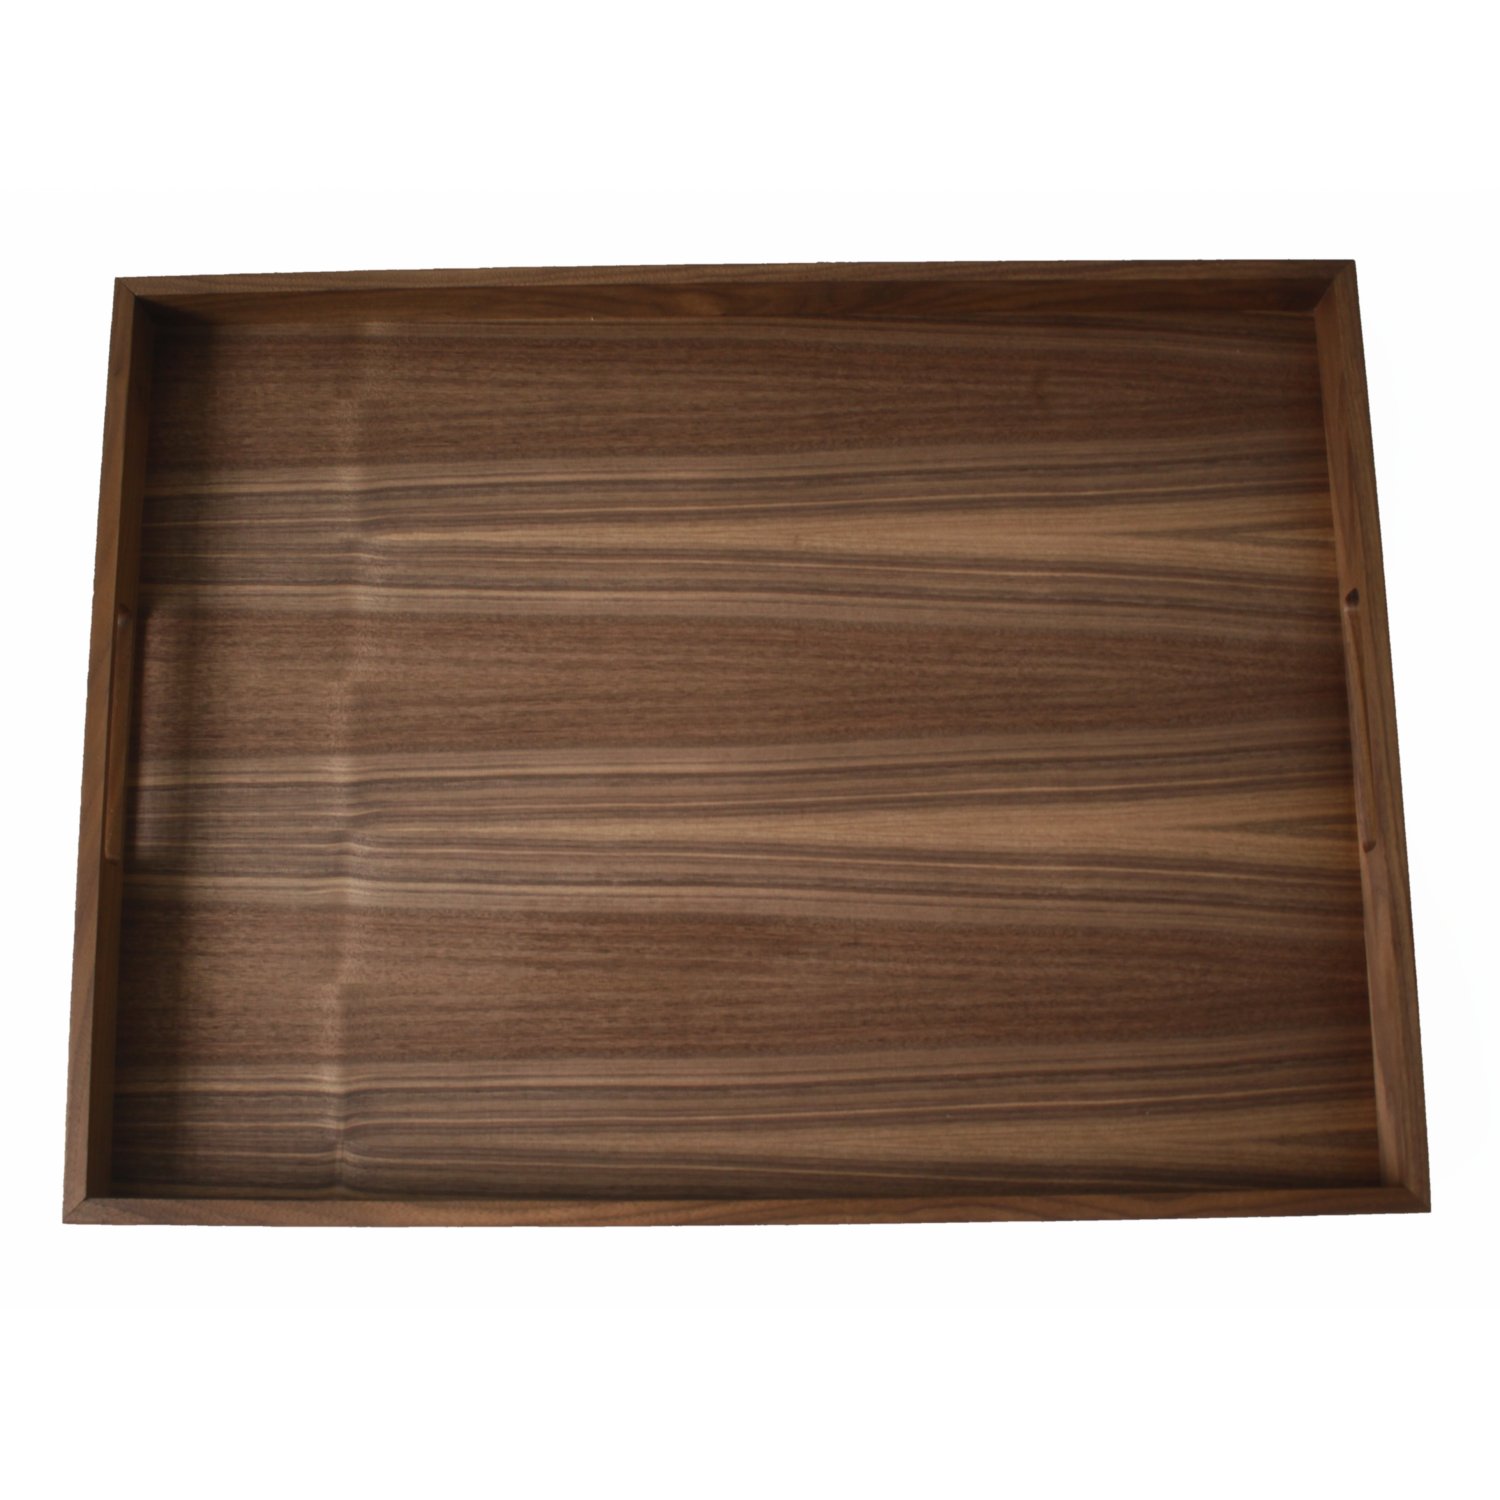 Walnut wood tray 60x45cm